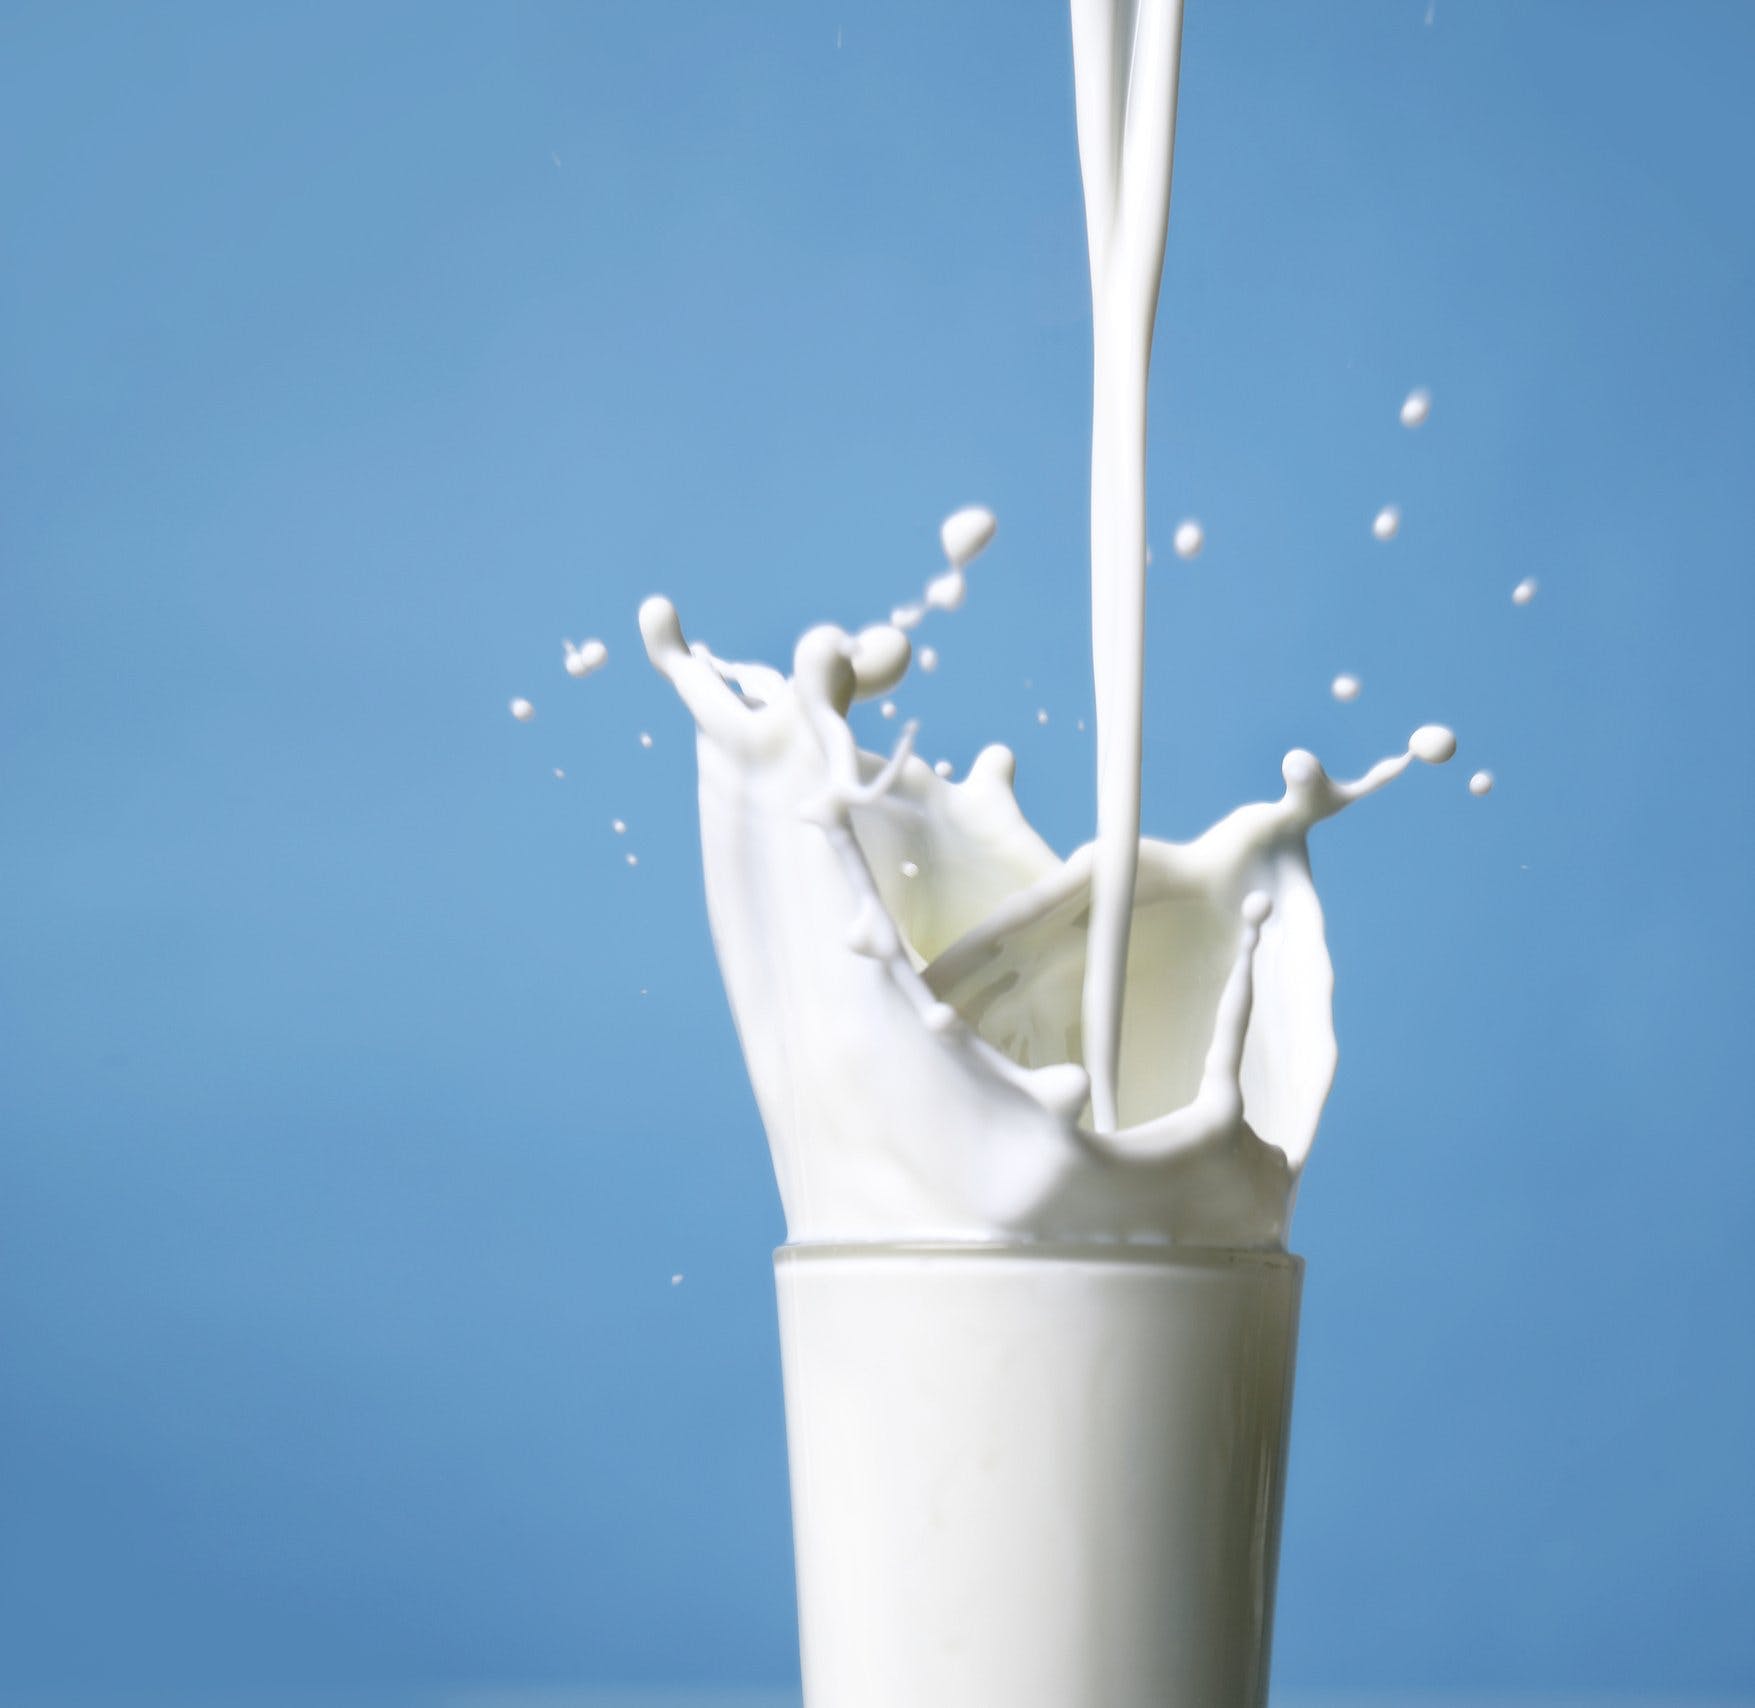 Det här är den hälsosammaste mjölken Image